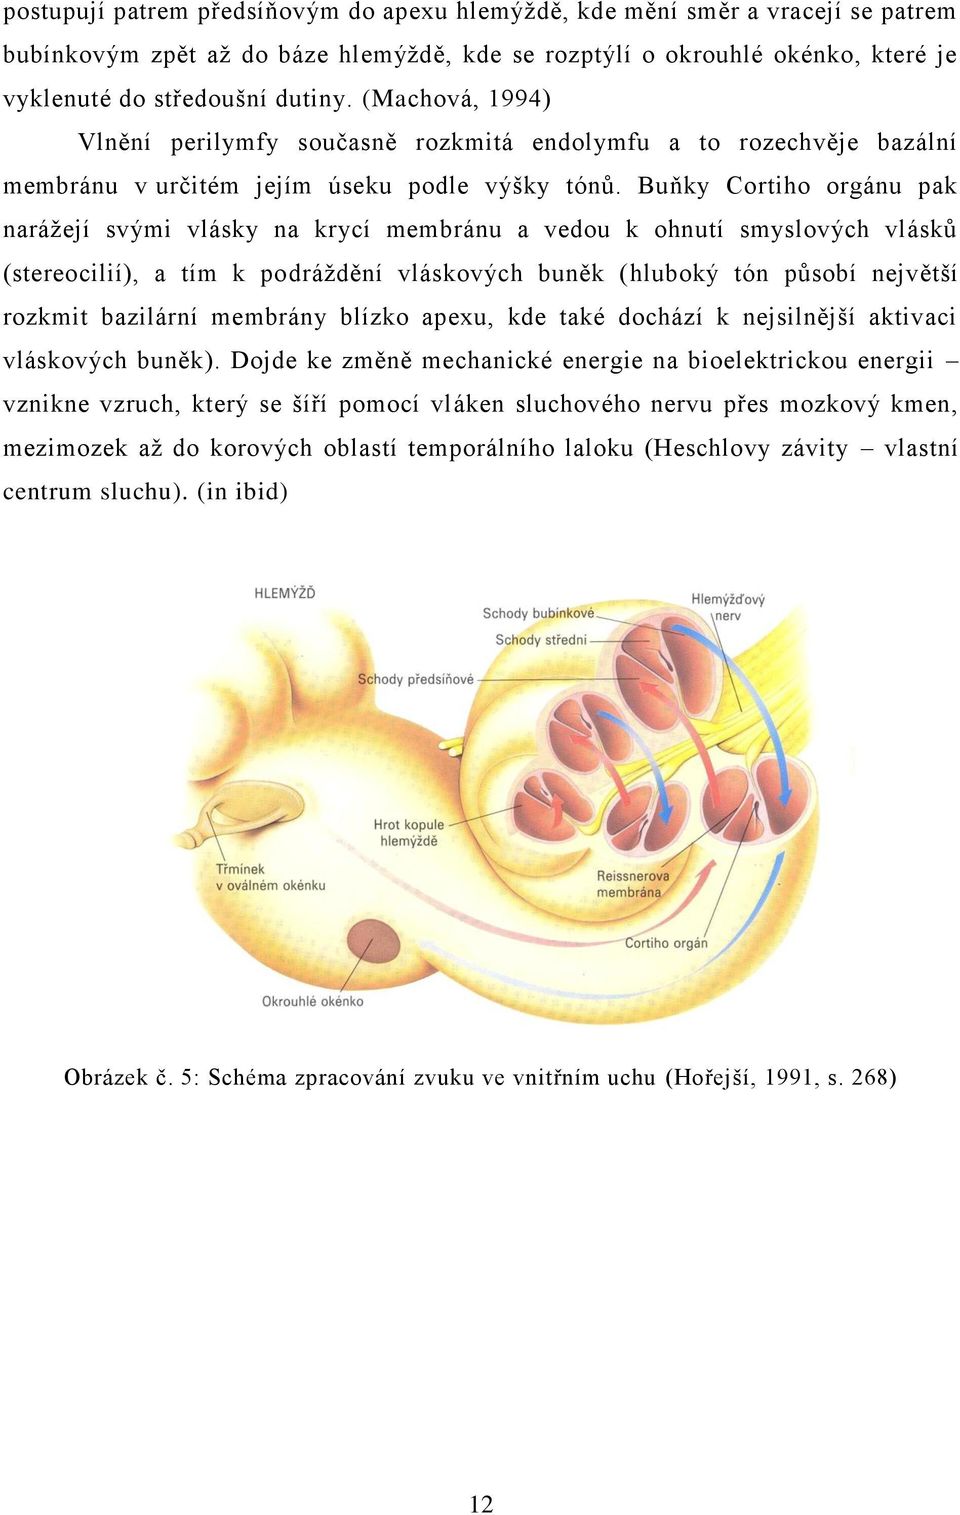 Buňky Cortiho orgánu pak naráţejí svými vlásky na krycí membránu a vedou k ohnutí smyslových vlásků (stereocilií), a tím k podráţdění vláskových buněk (hluboký tón působí největší rozkmit bazilární